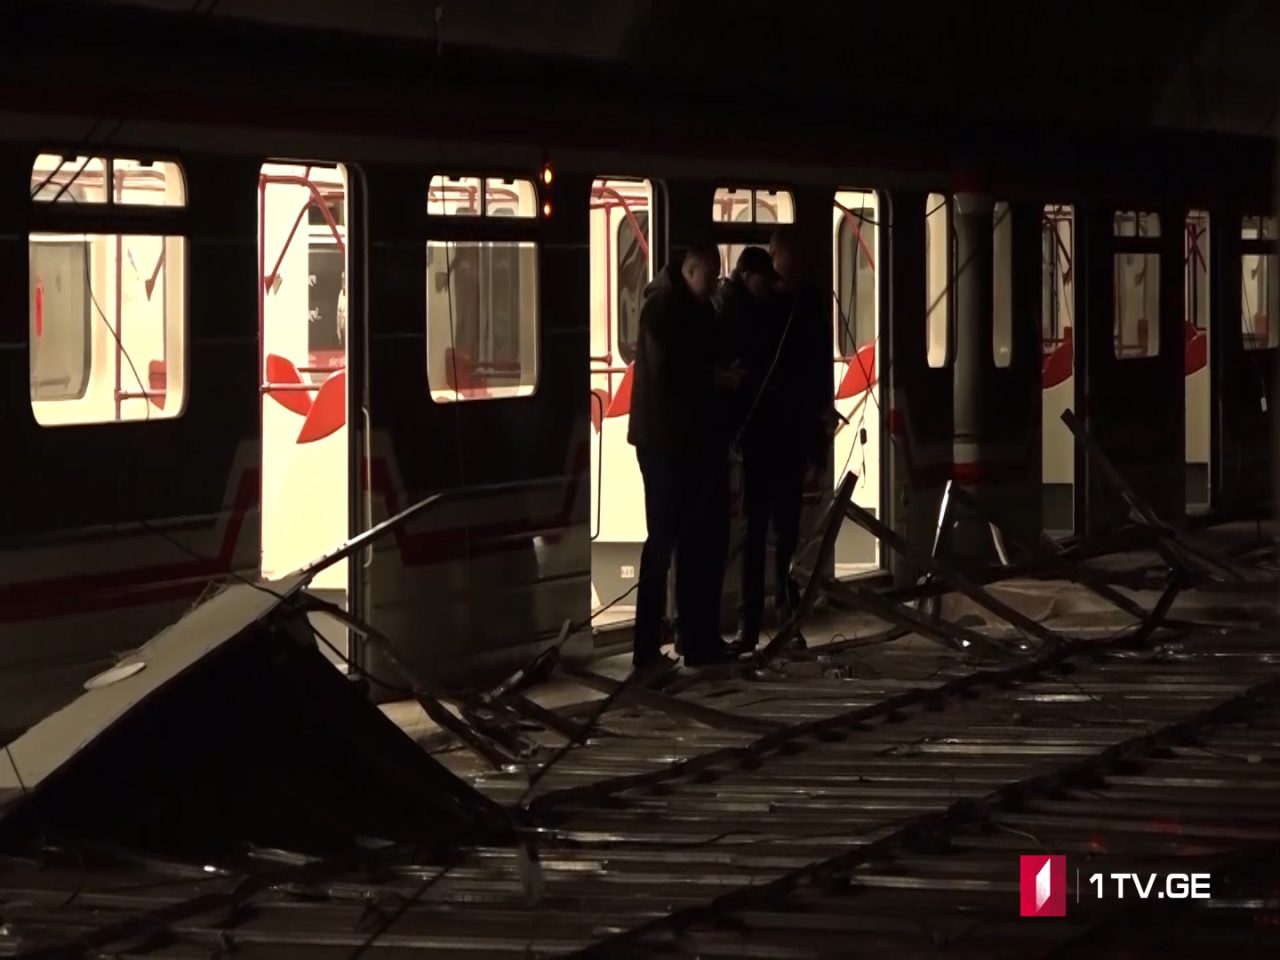 Новые видеокадры из станции метро «Варкетили», где в результате обрушения потолка пострадали 14 человек